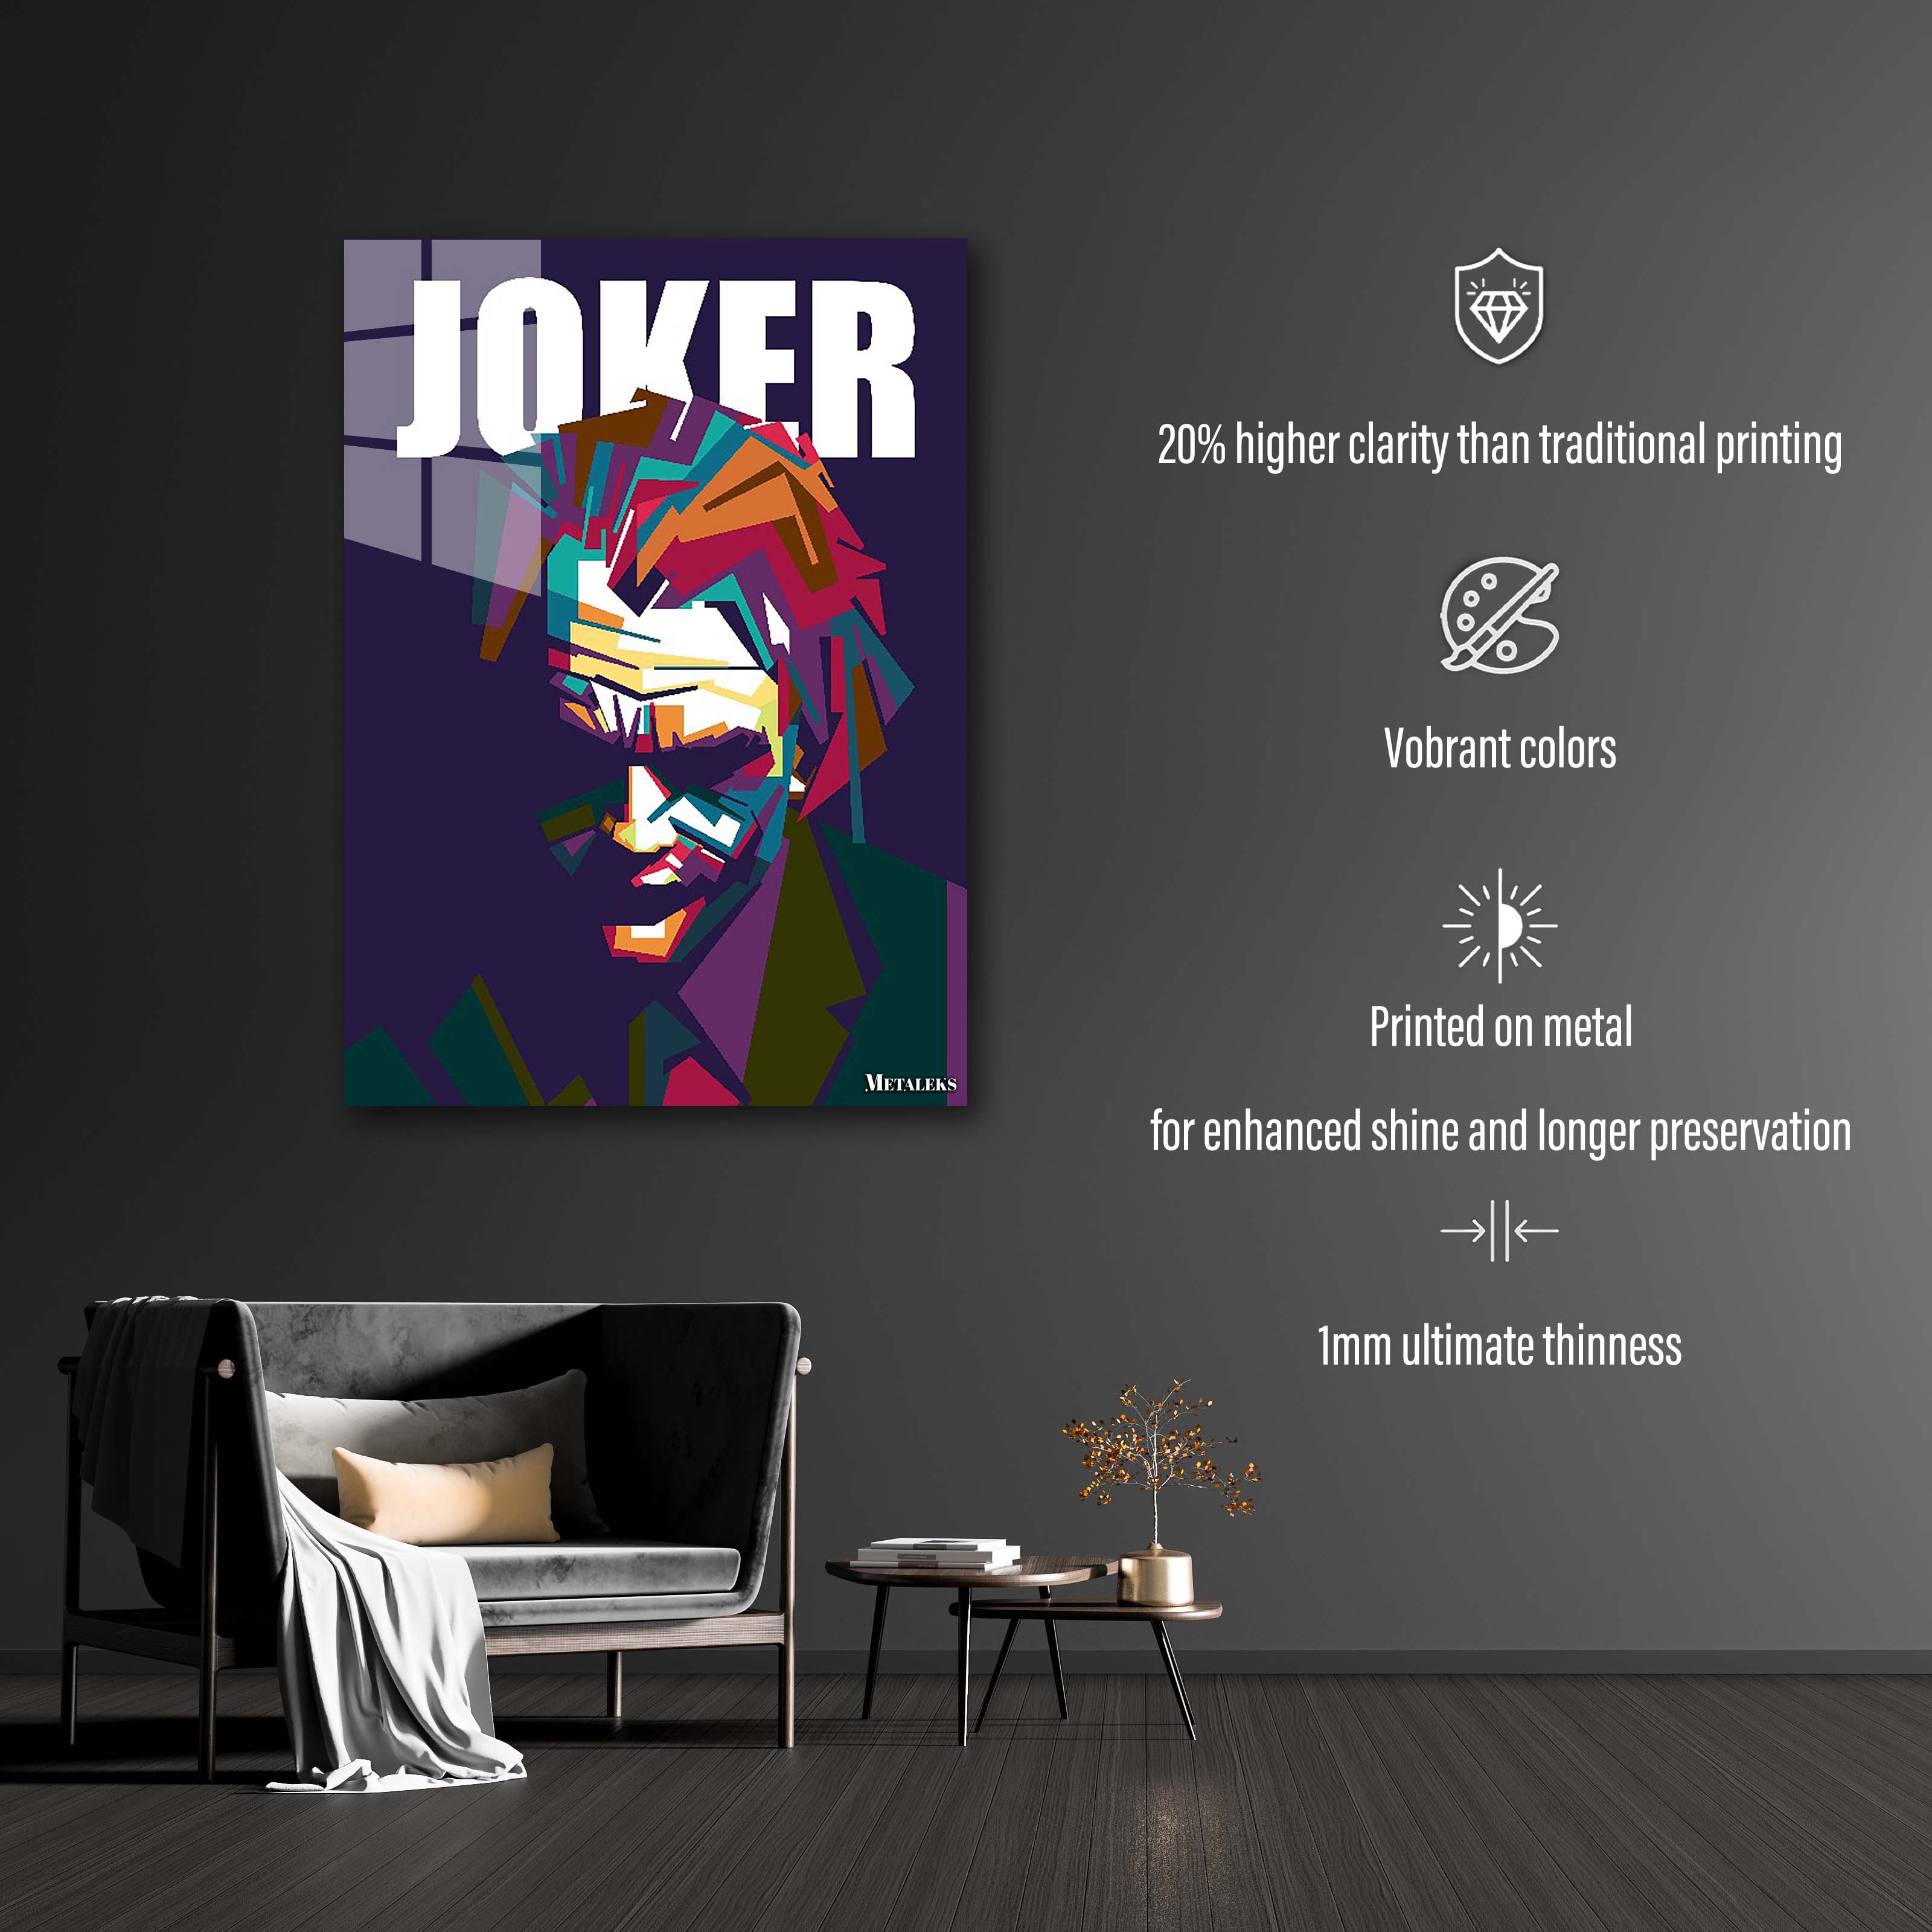 thejoker WPAP-designed by @zhian ramadhan B10